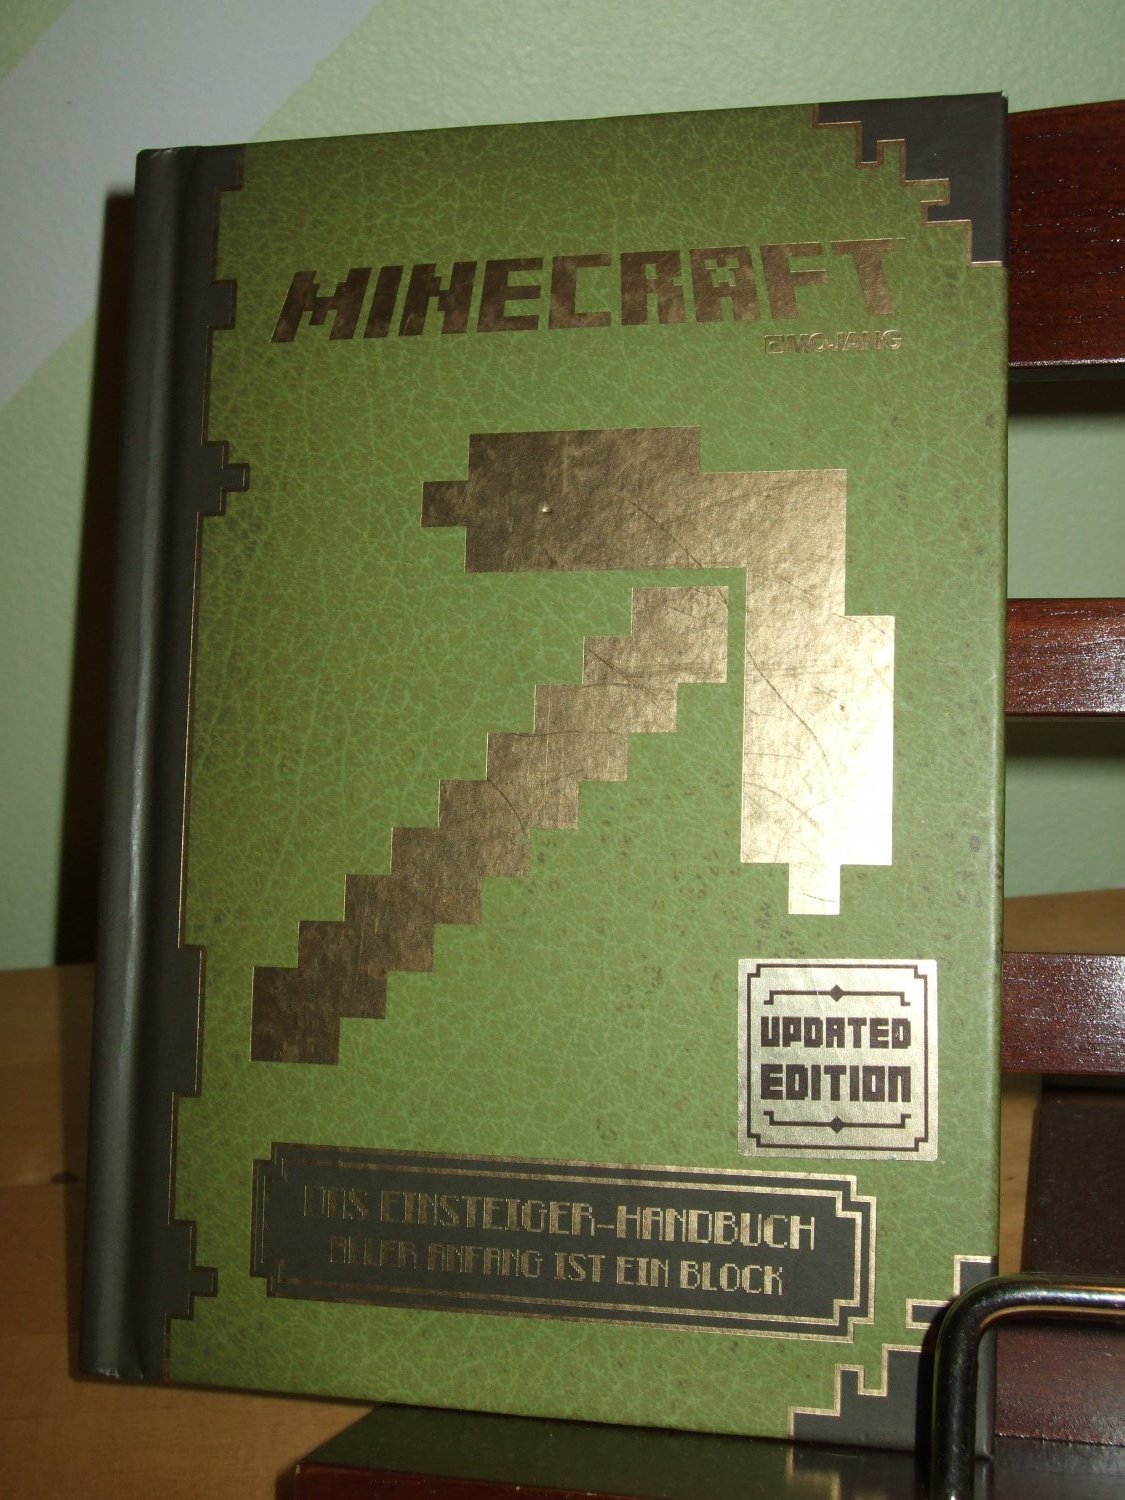 Das Einsteiger-Handbuch Aller Anfang ist ein Block Minecraft